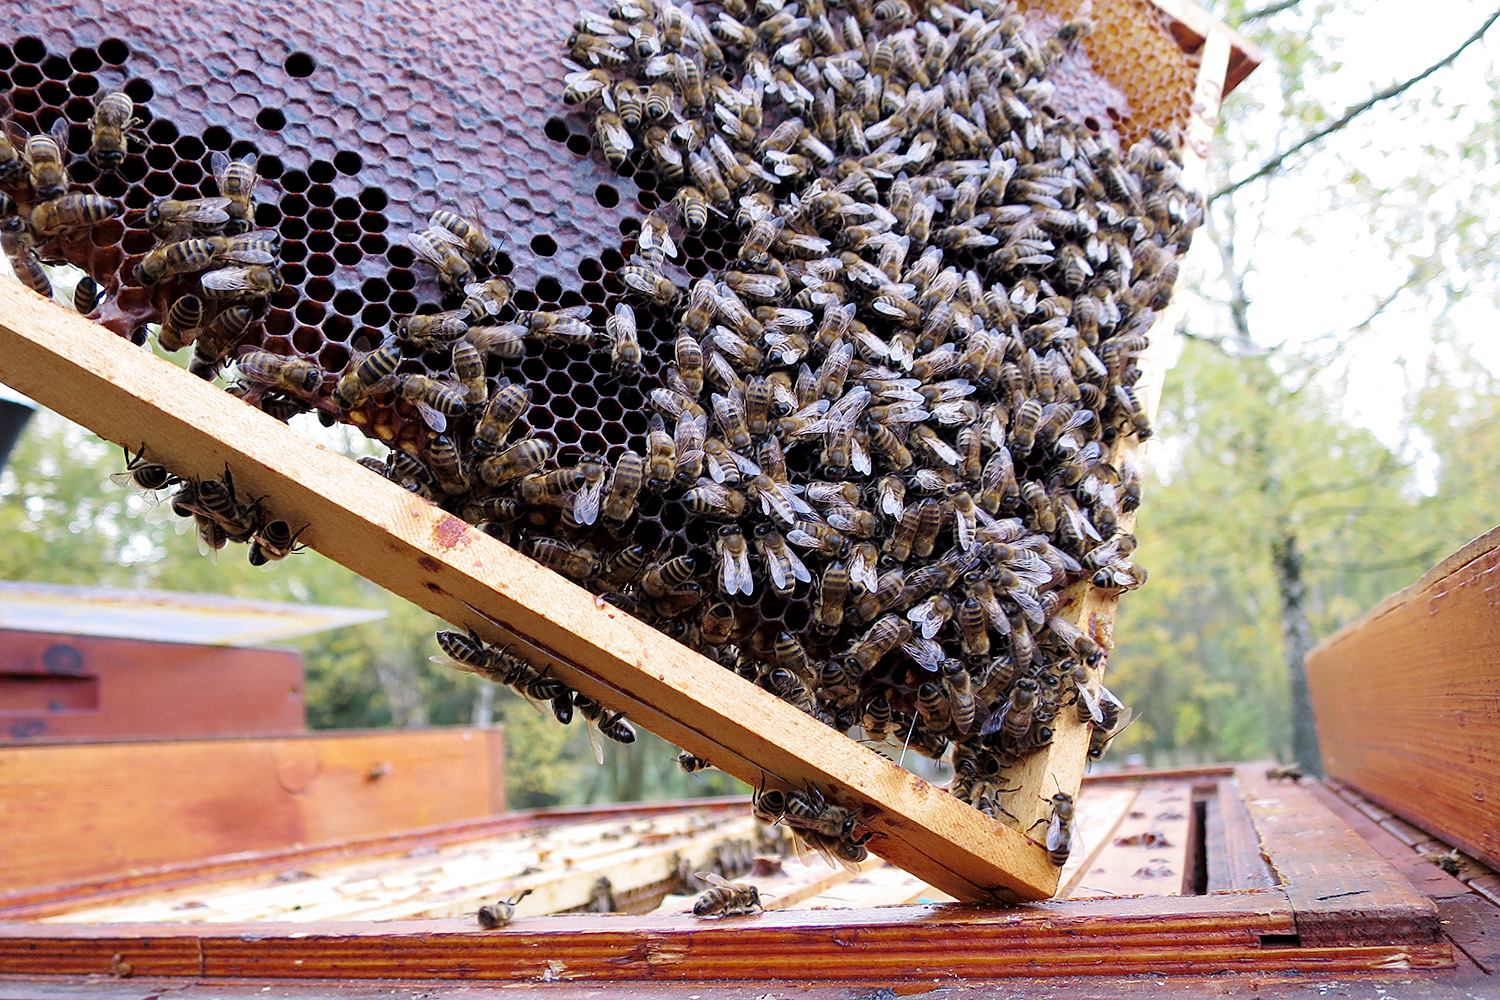 Včely z chovu nasavrckého učiliště se připravují na zimu